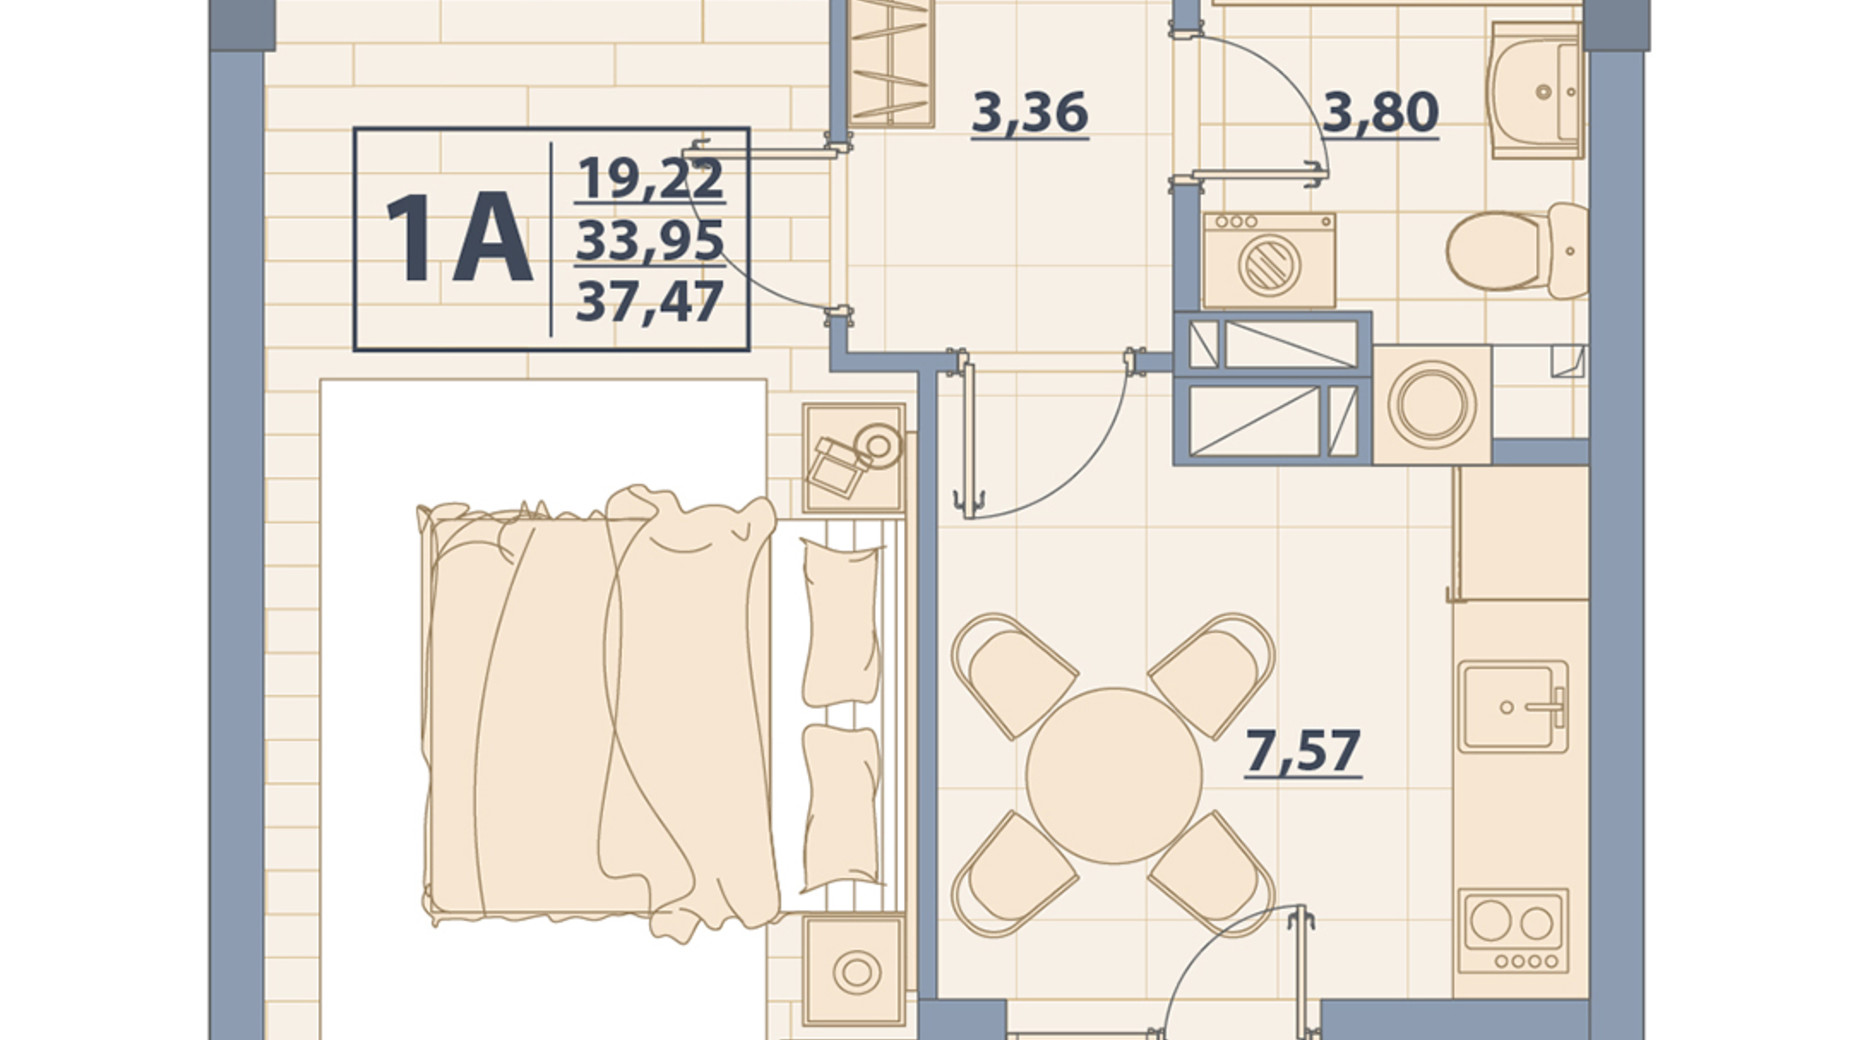 Планировка 1-комнатной квартиры в ЖК Centr City 37.47 м², фото 579651